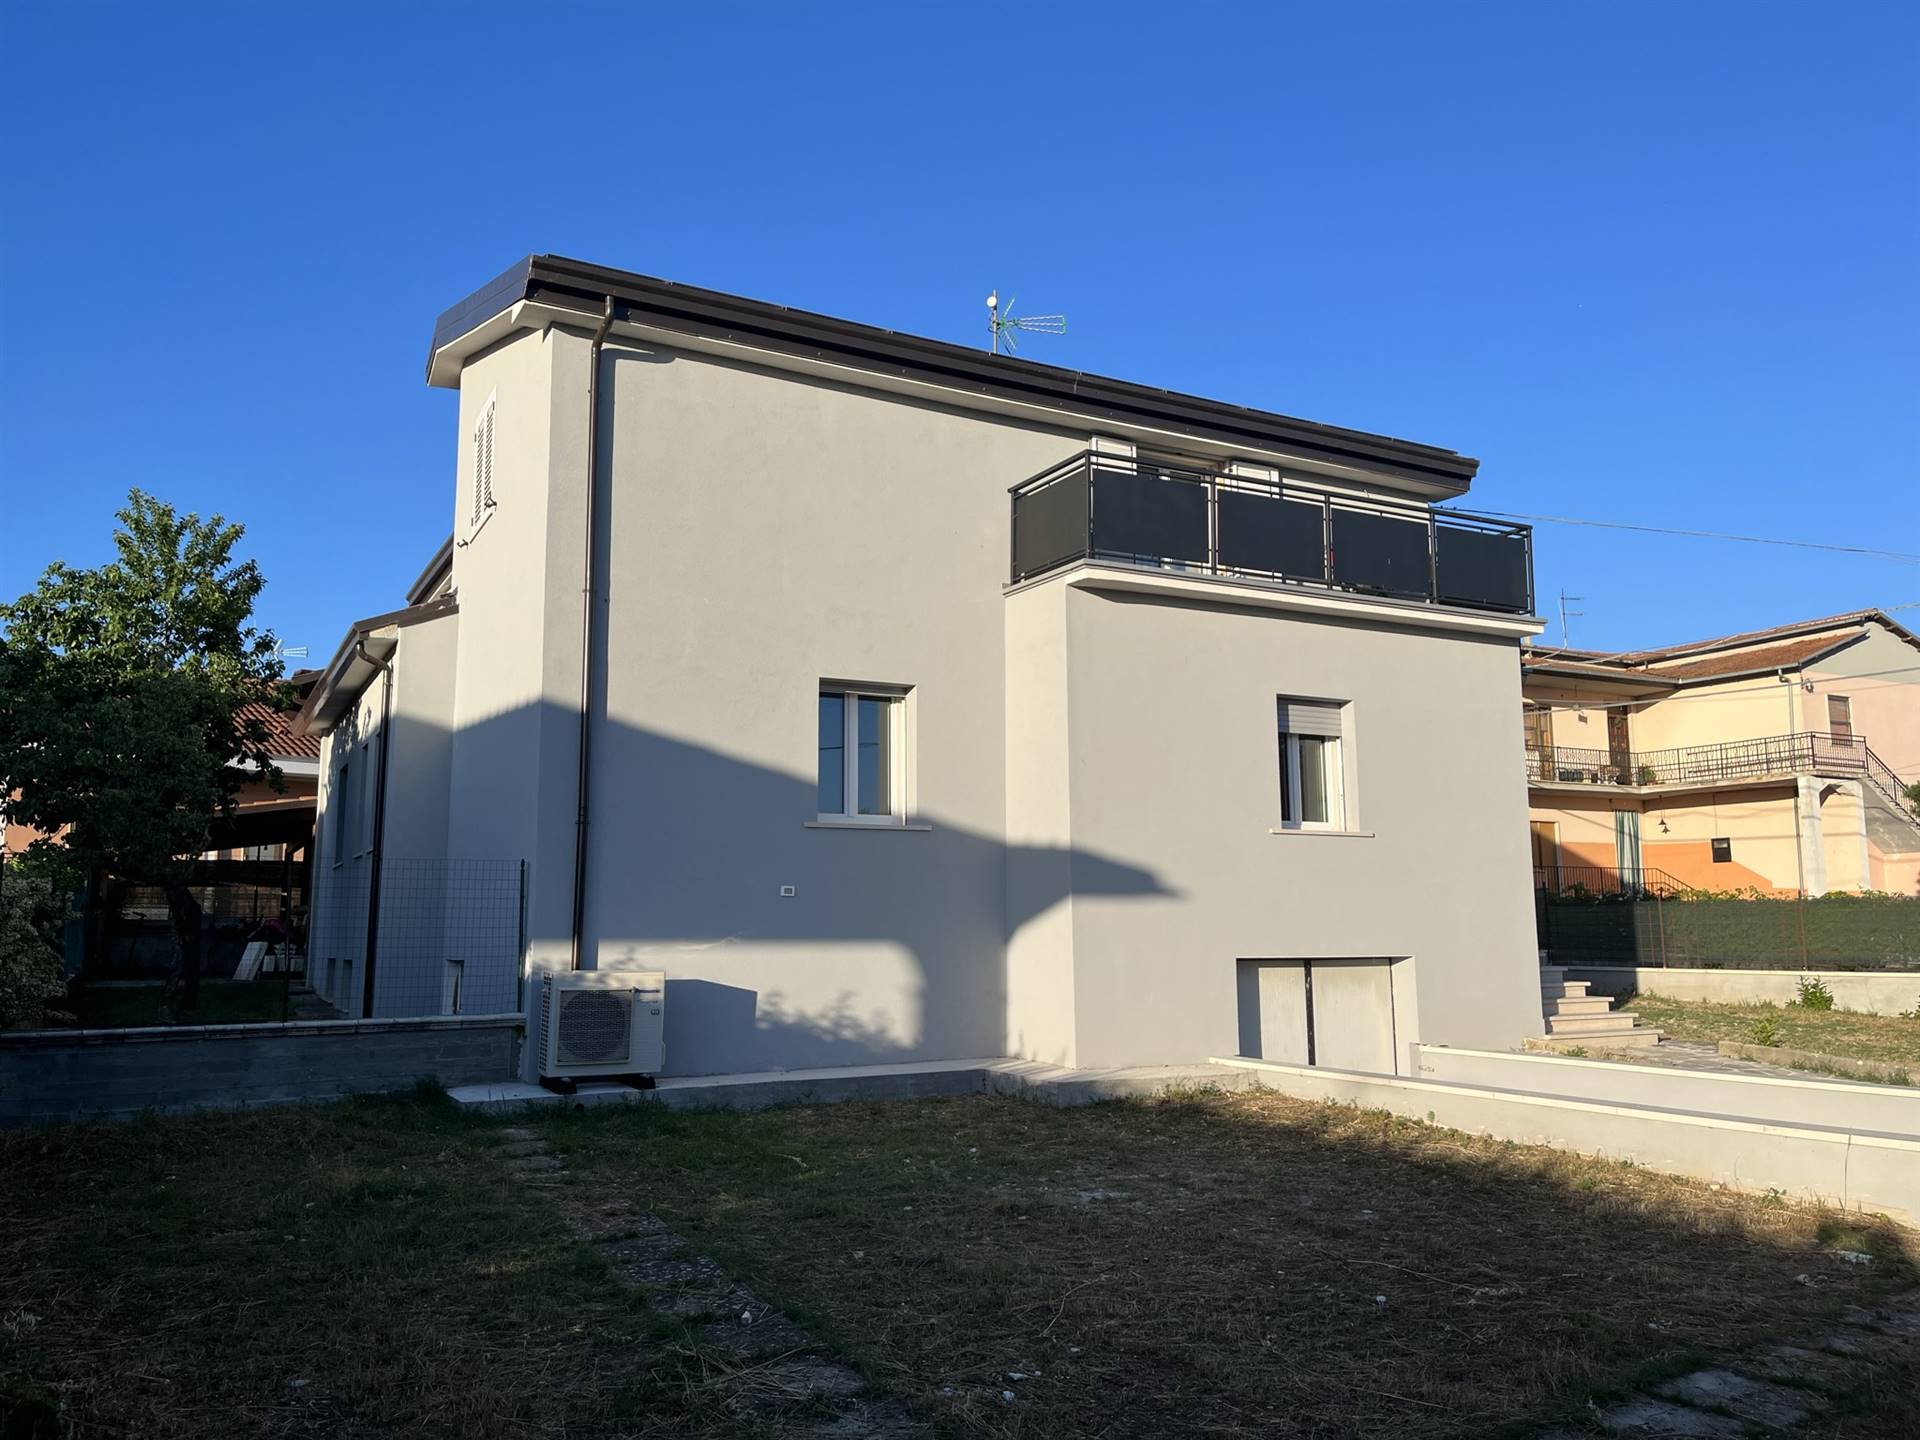 Villa Bifamiliare in vendita a Magliano de' Marsi, 6 locali, prezzo € 225.000 | PortaleAgenzieImmobiliari.it